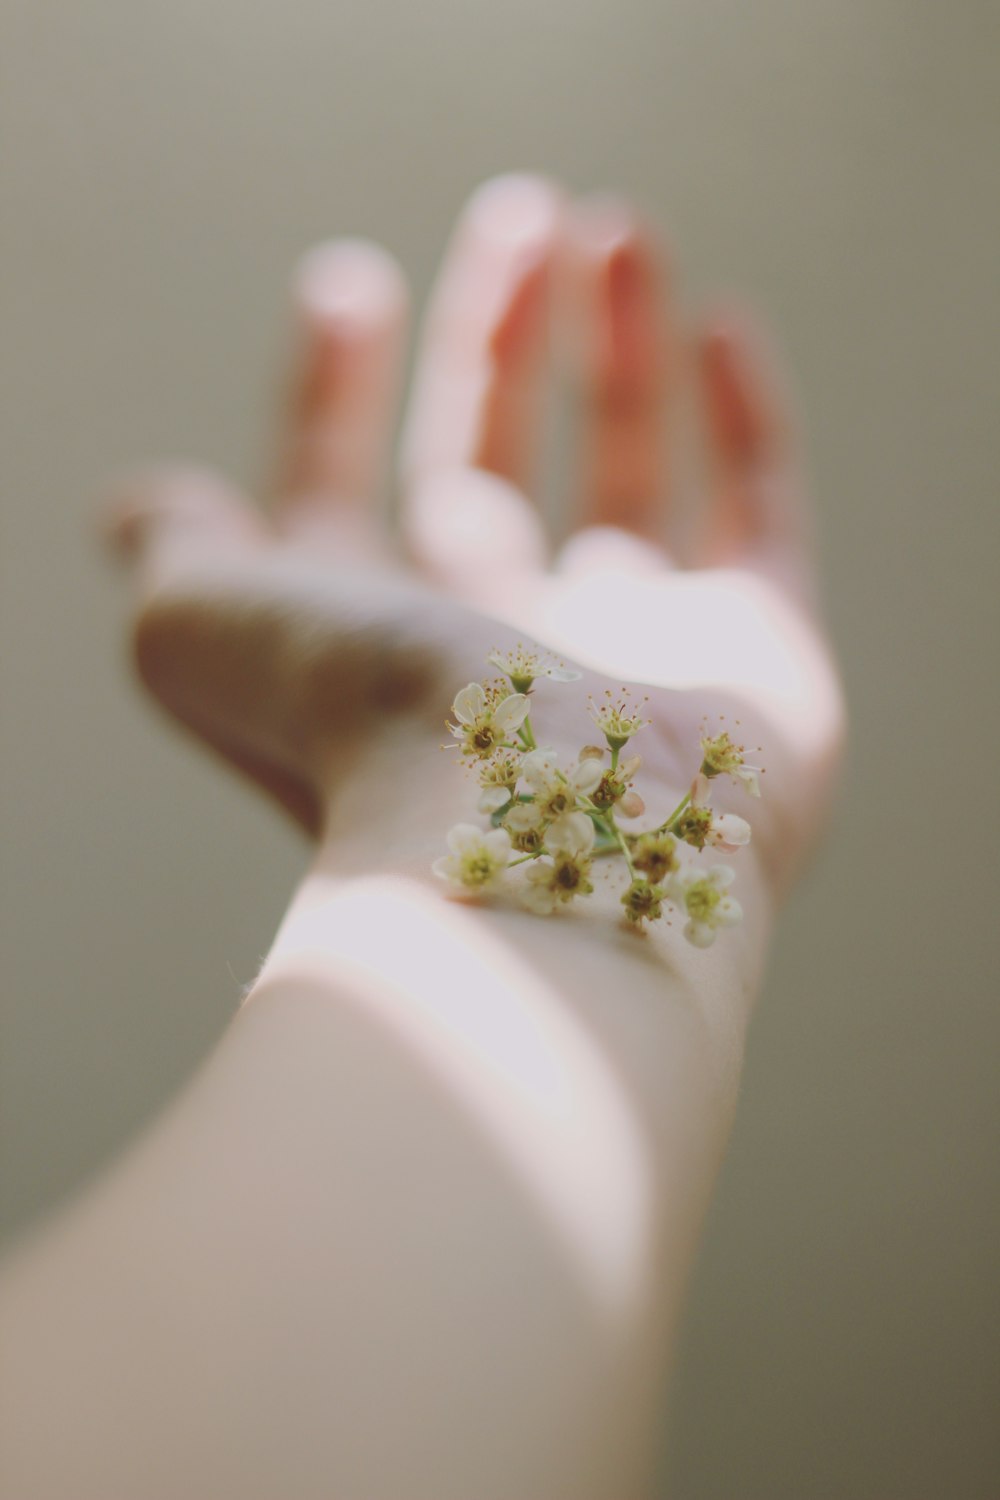 photographie de mise au point sélective de fleurs blanches groupées sur la main gauche de l'homme